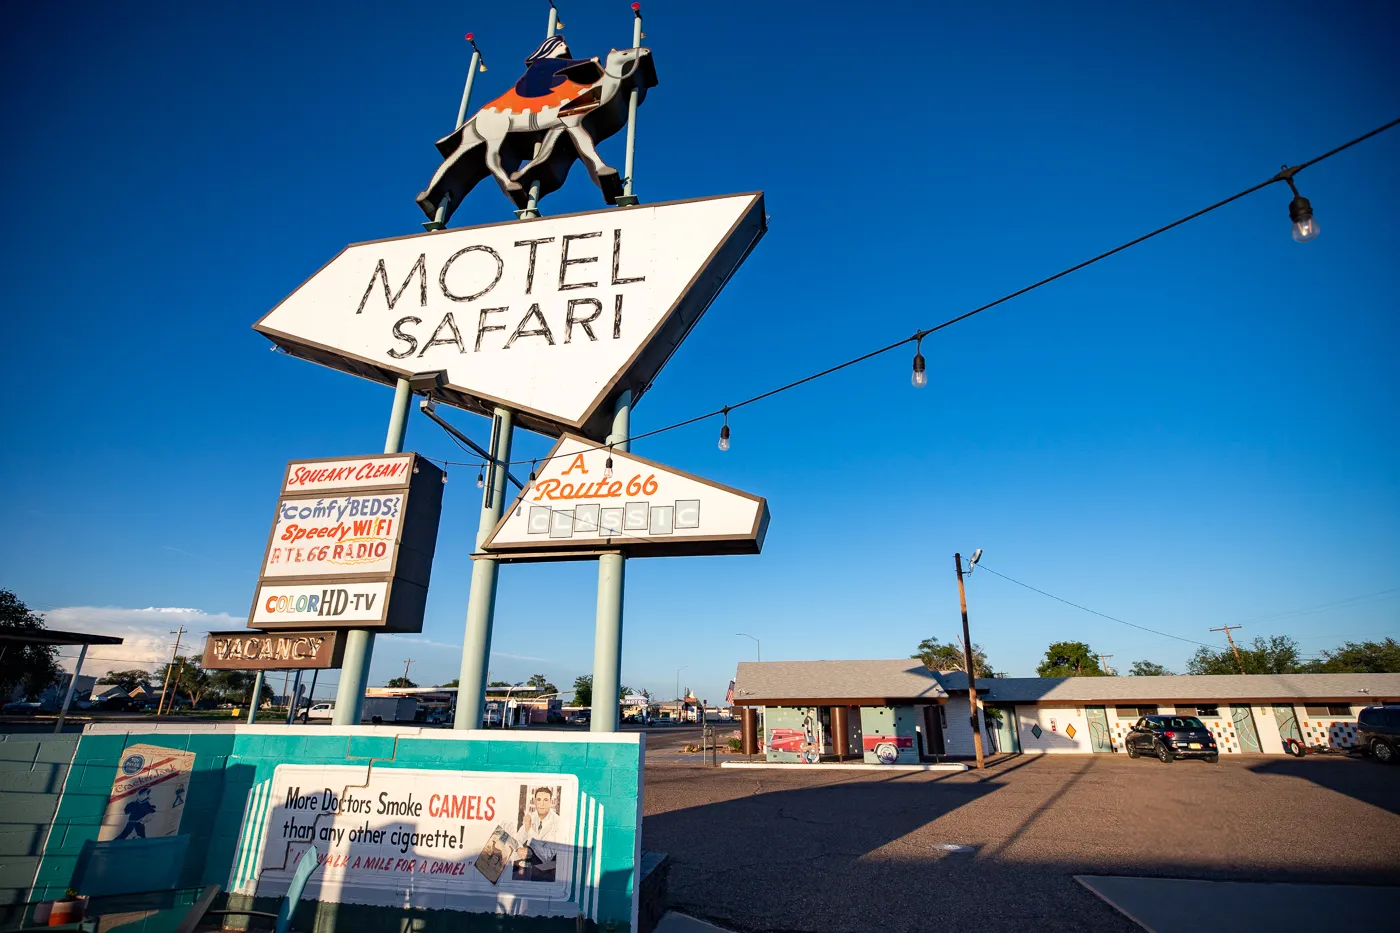 Retro Googie Motel Sign with a camel at Motel Safari in Tucumcari, New Mexico (Route 66 Motel)